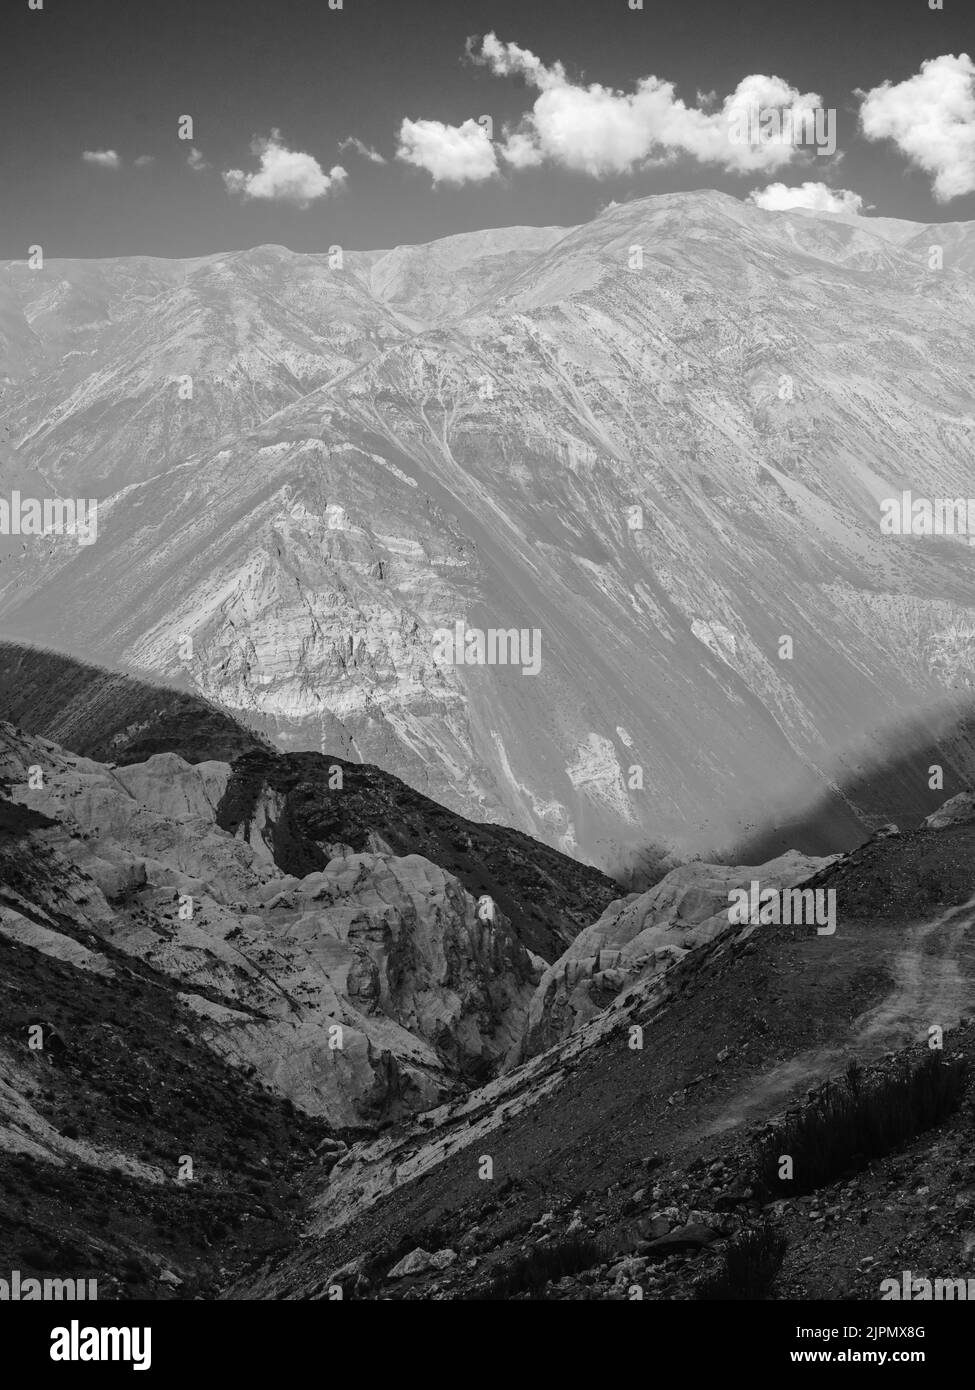 Vea el valle Spiti con altas cordilleras y laderas empinadas de las montañas del Himalaya bajo un cielo azul brillante con nubes durante el verano cerca de Kaza, India. Foto de stock